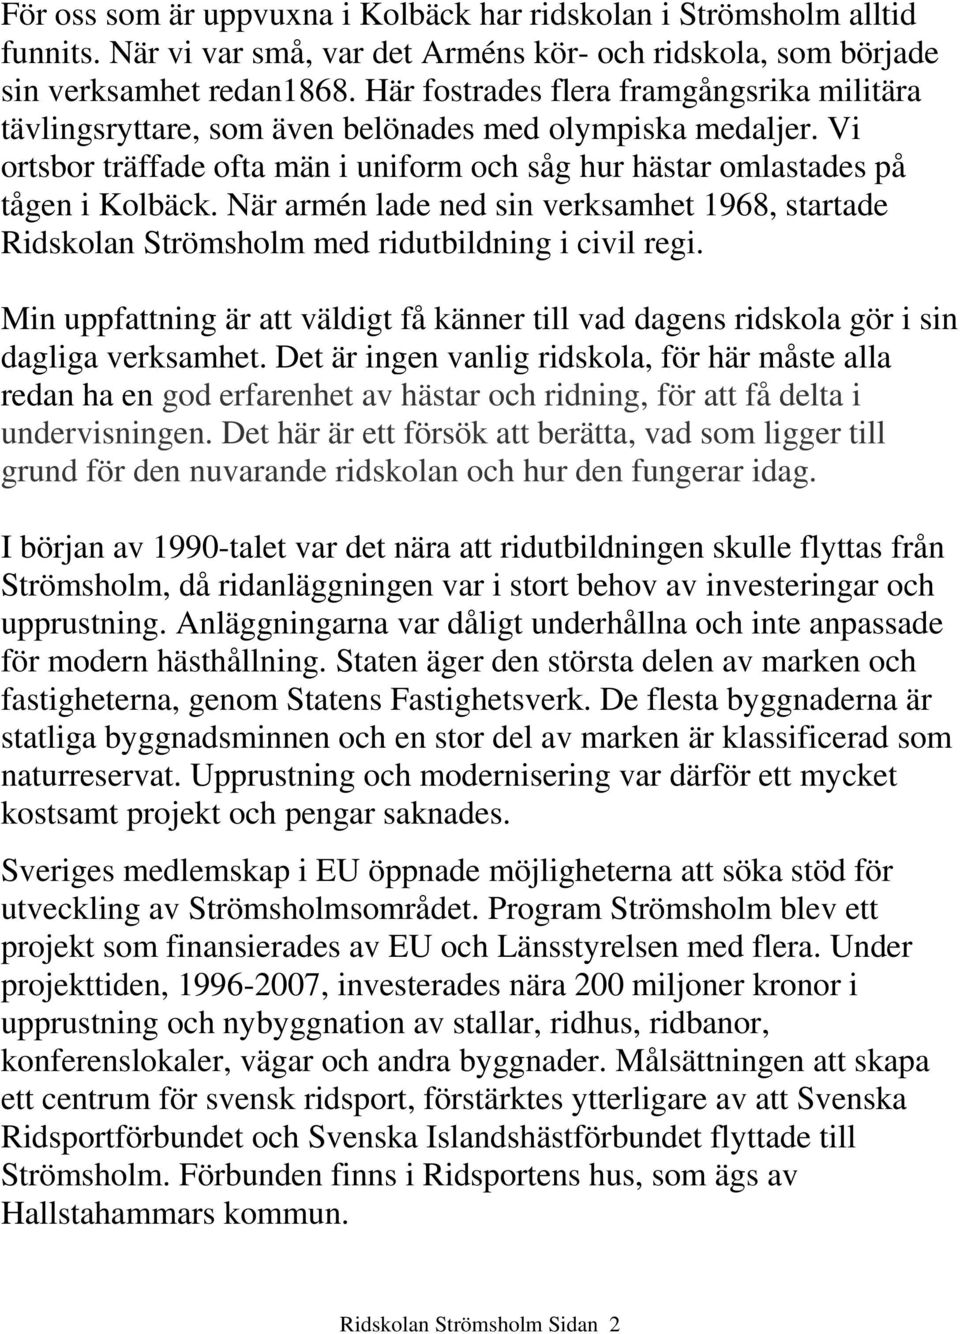 När armén lade ned sin verksamhet 1968, startade Ridskolan Strömsholm med ridutbildning i civil regi. Min uppfattning är att väldigt få känner till vad dagens ridskola gör i sin dagliga verksamhet.